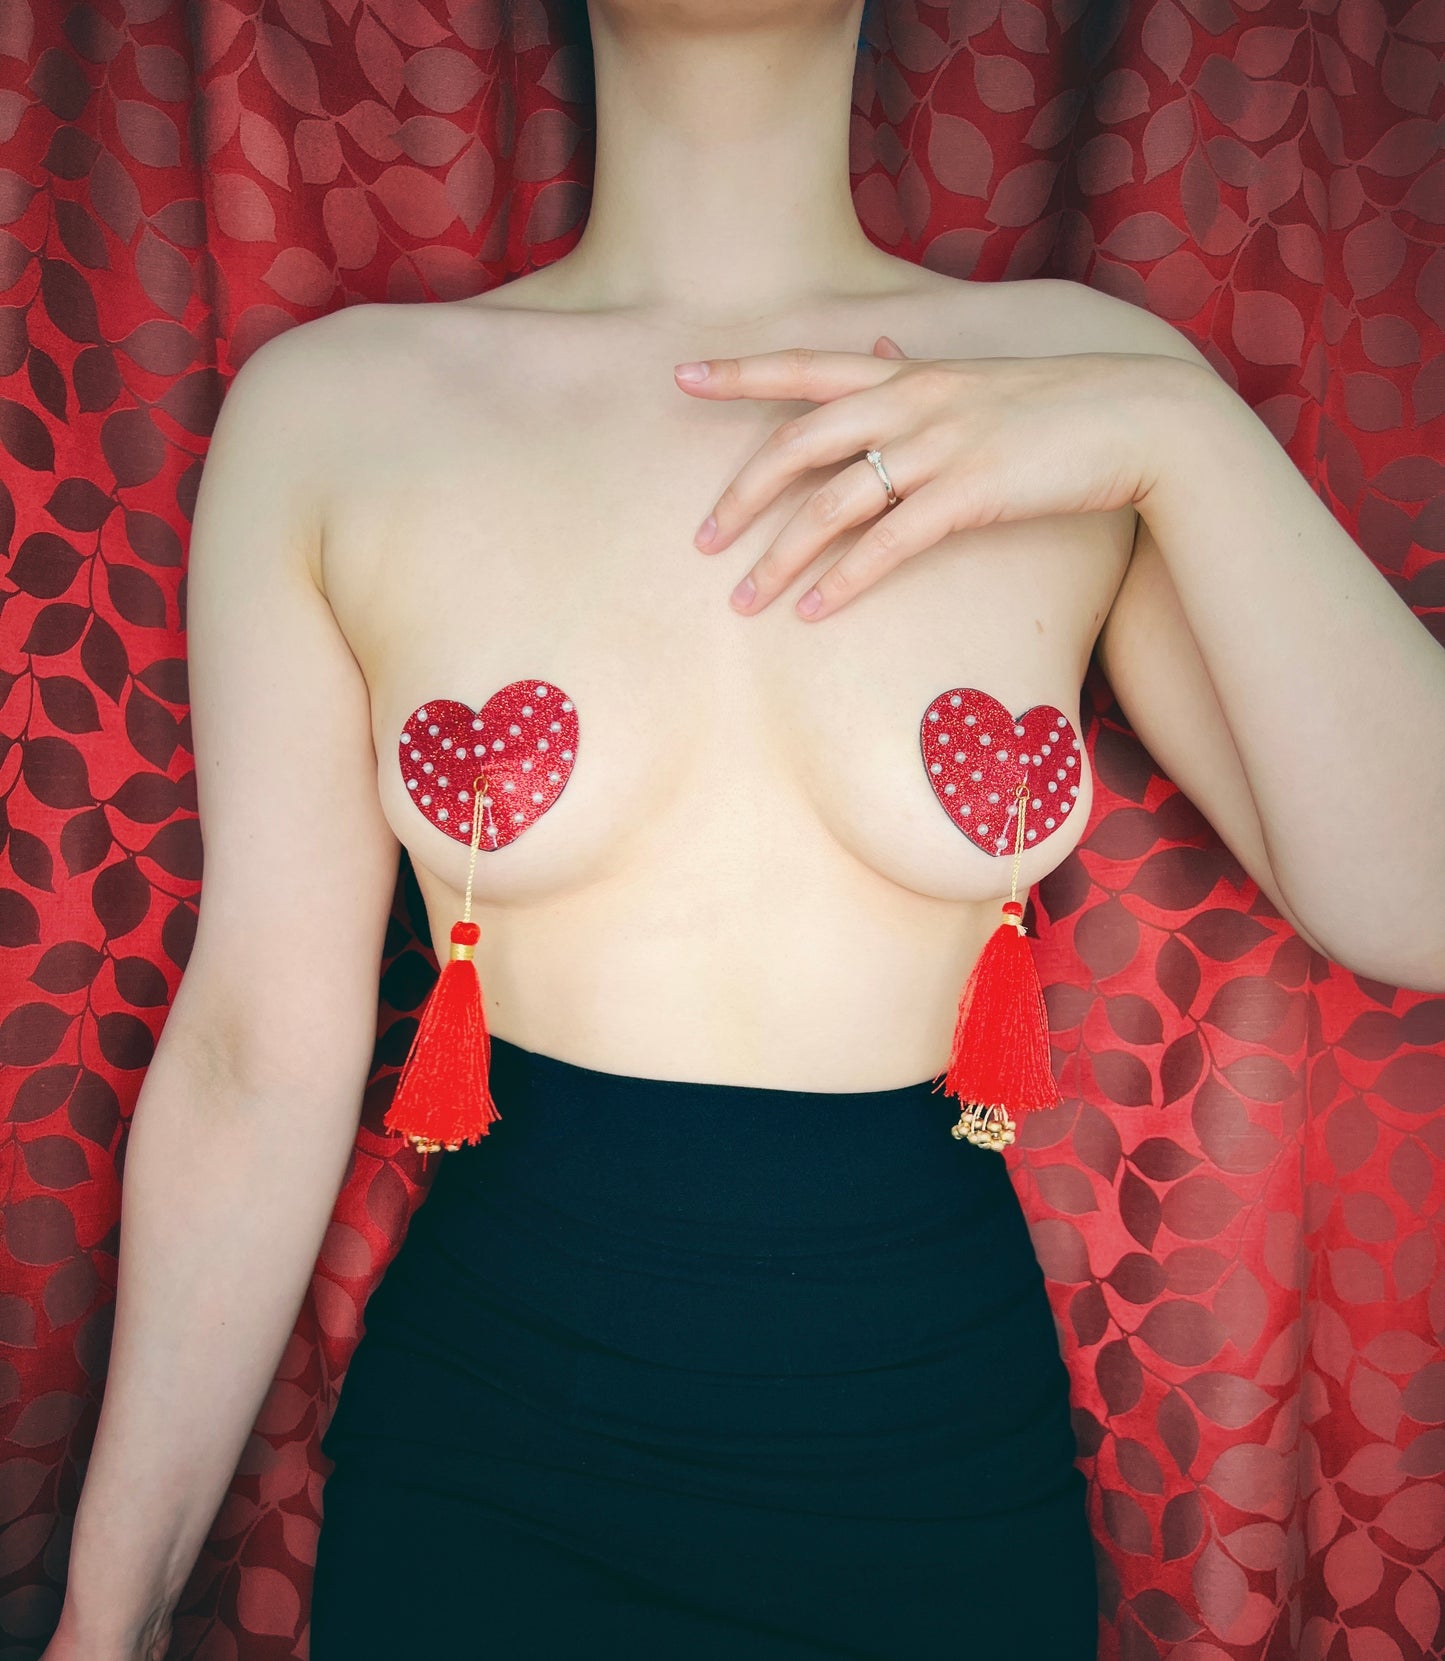 Fanny Valentine Glitter Hearts and Pearl Pasties avec glands (2 pcs) pour lingerie, festivals burlesques